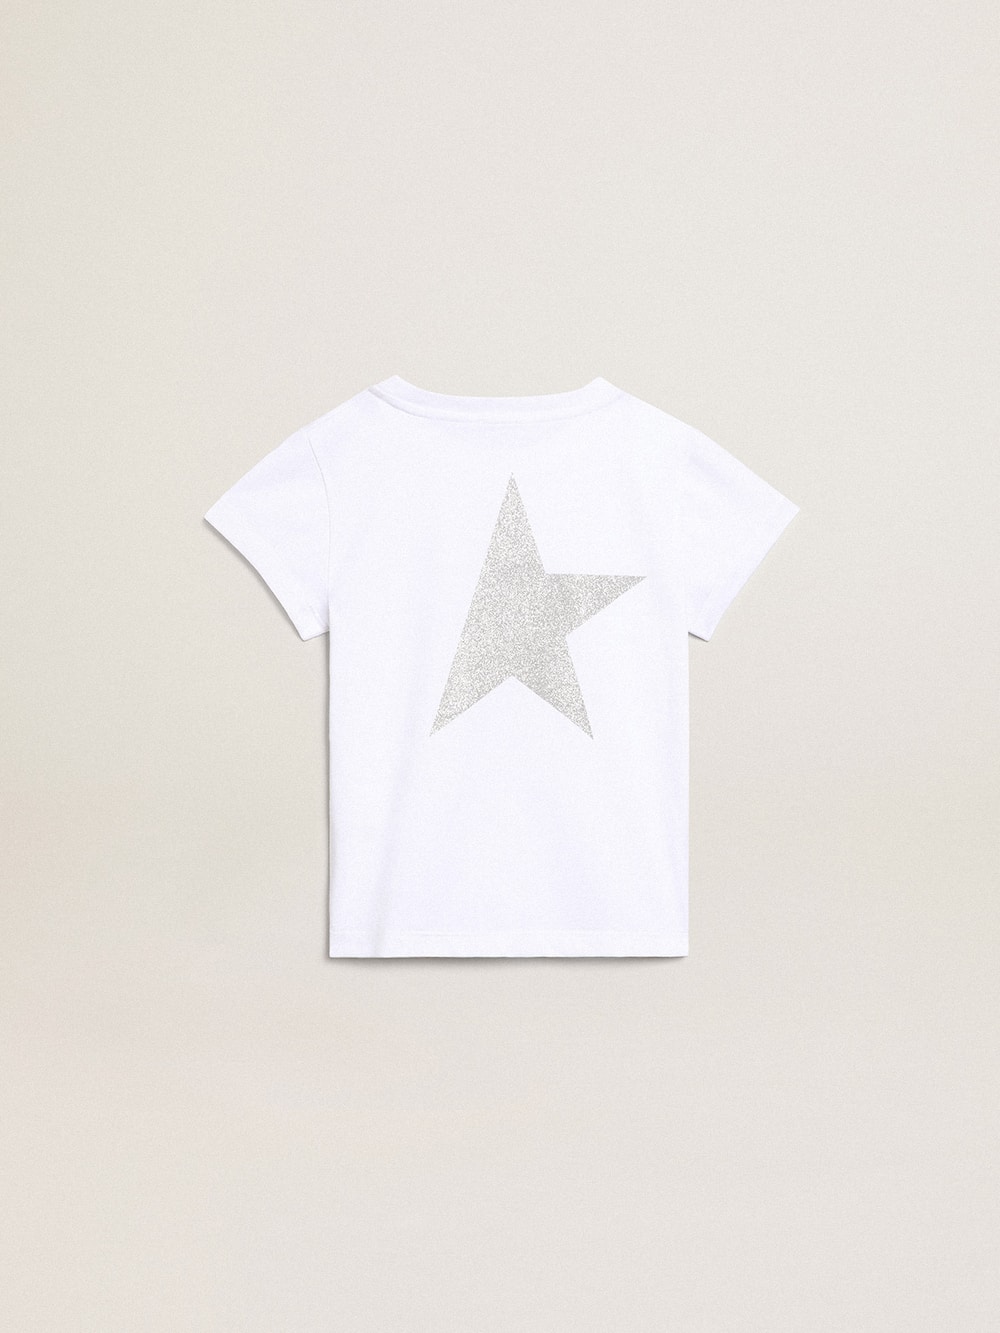 Golden Goose - Weißes und silbernes T-Shirt mit Logo und Maxi-Stern in Silberglitzer in 